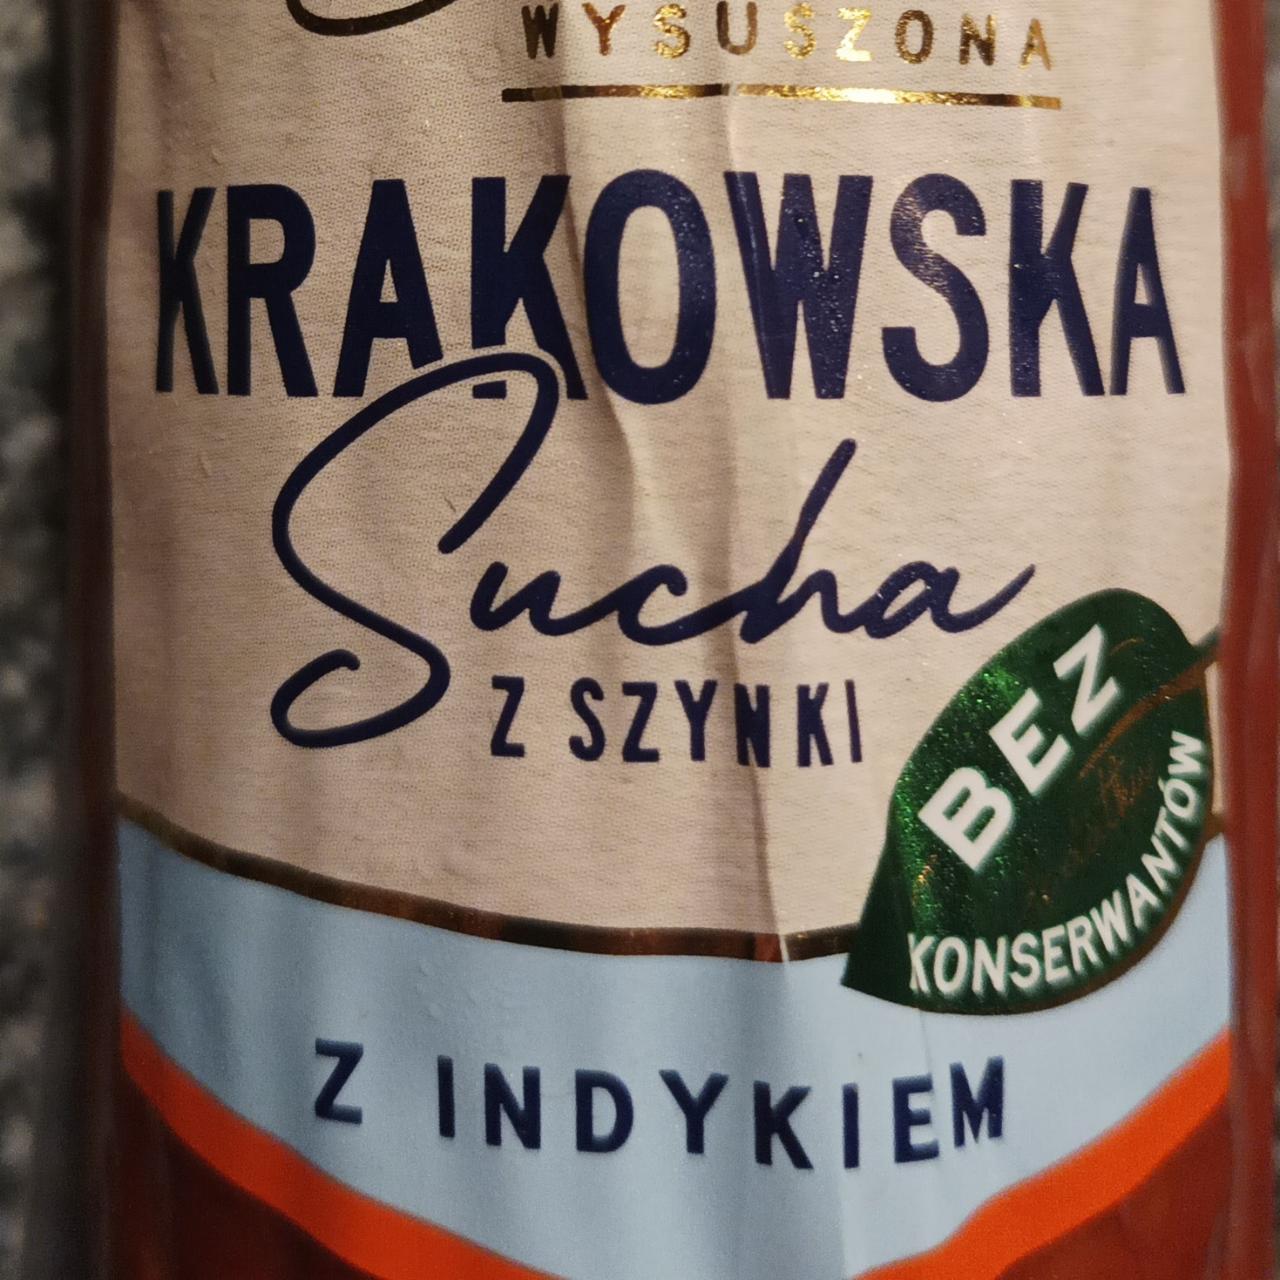 Zdjęcia - Krakowska Sucha z Szynki z Indykiem Extra Wysuszon Tarczyński